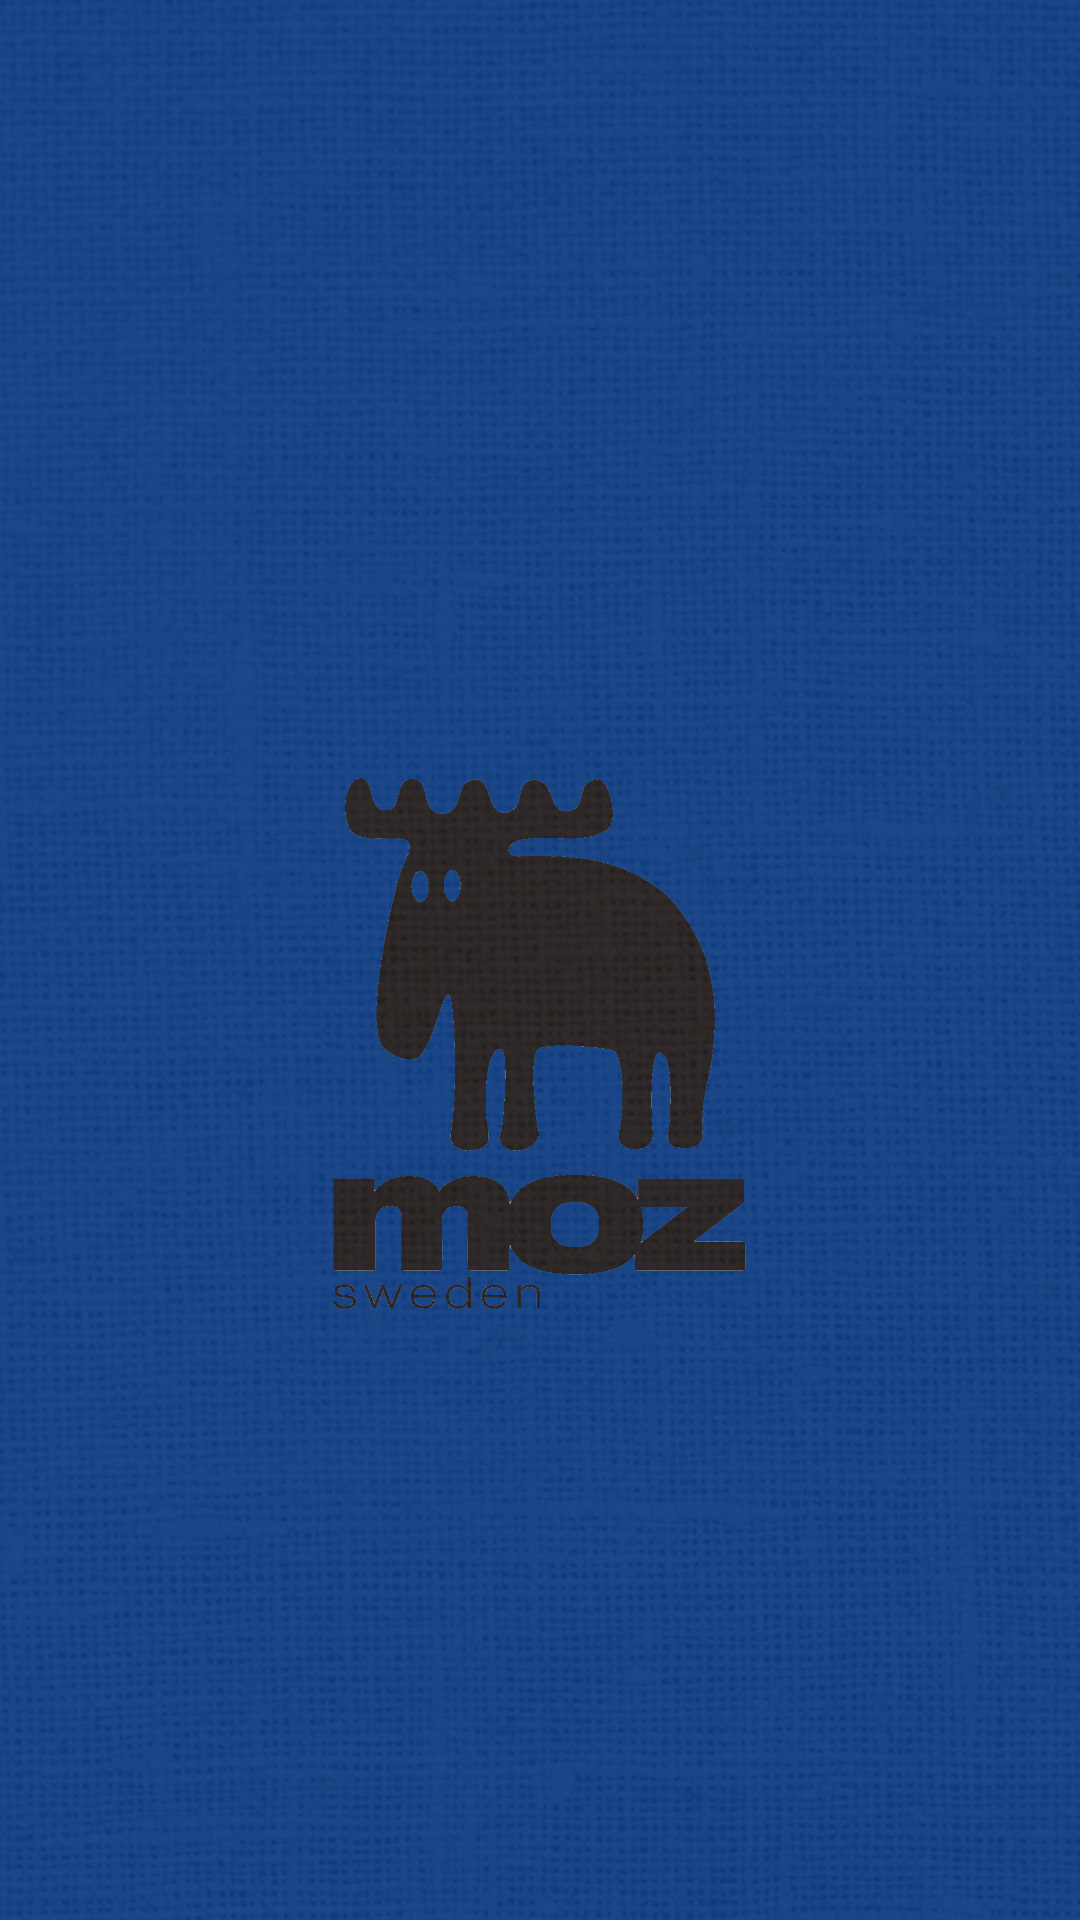 Moz モズのシンプルでかわいい無料高画質スマホ壁紙 エモい スマホ壁紙辞典